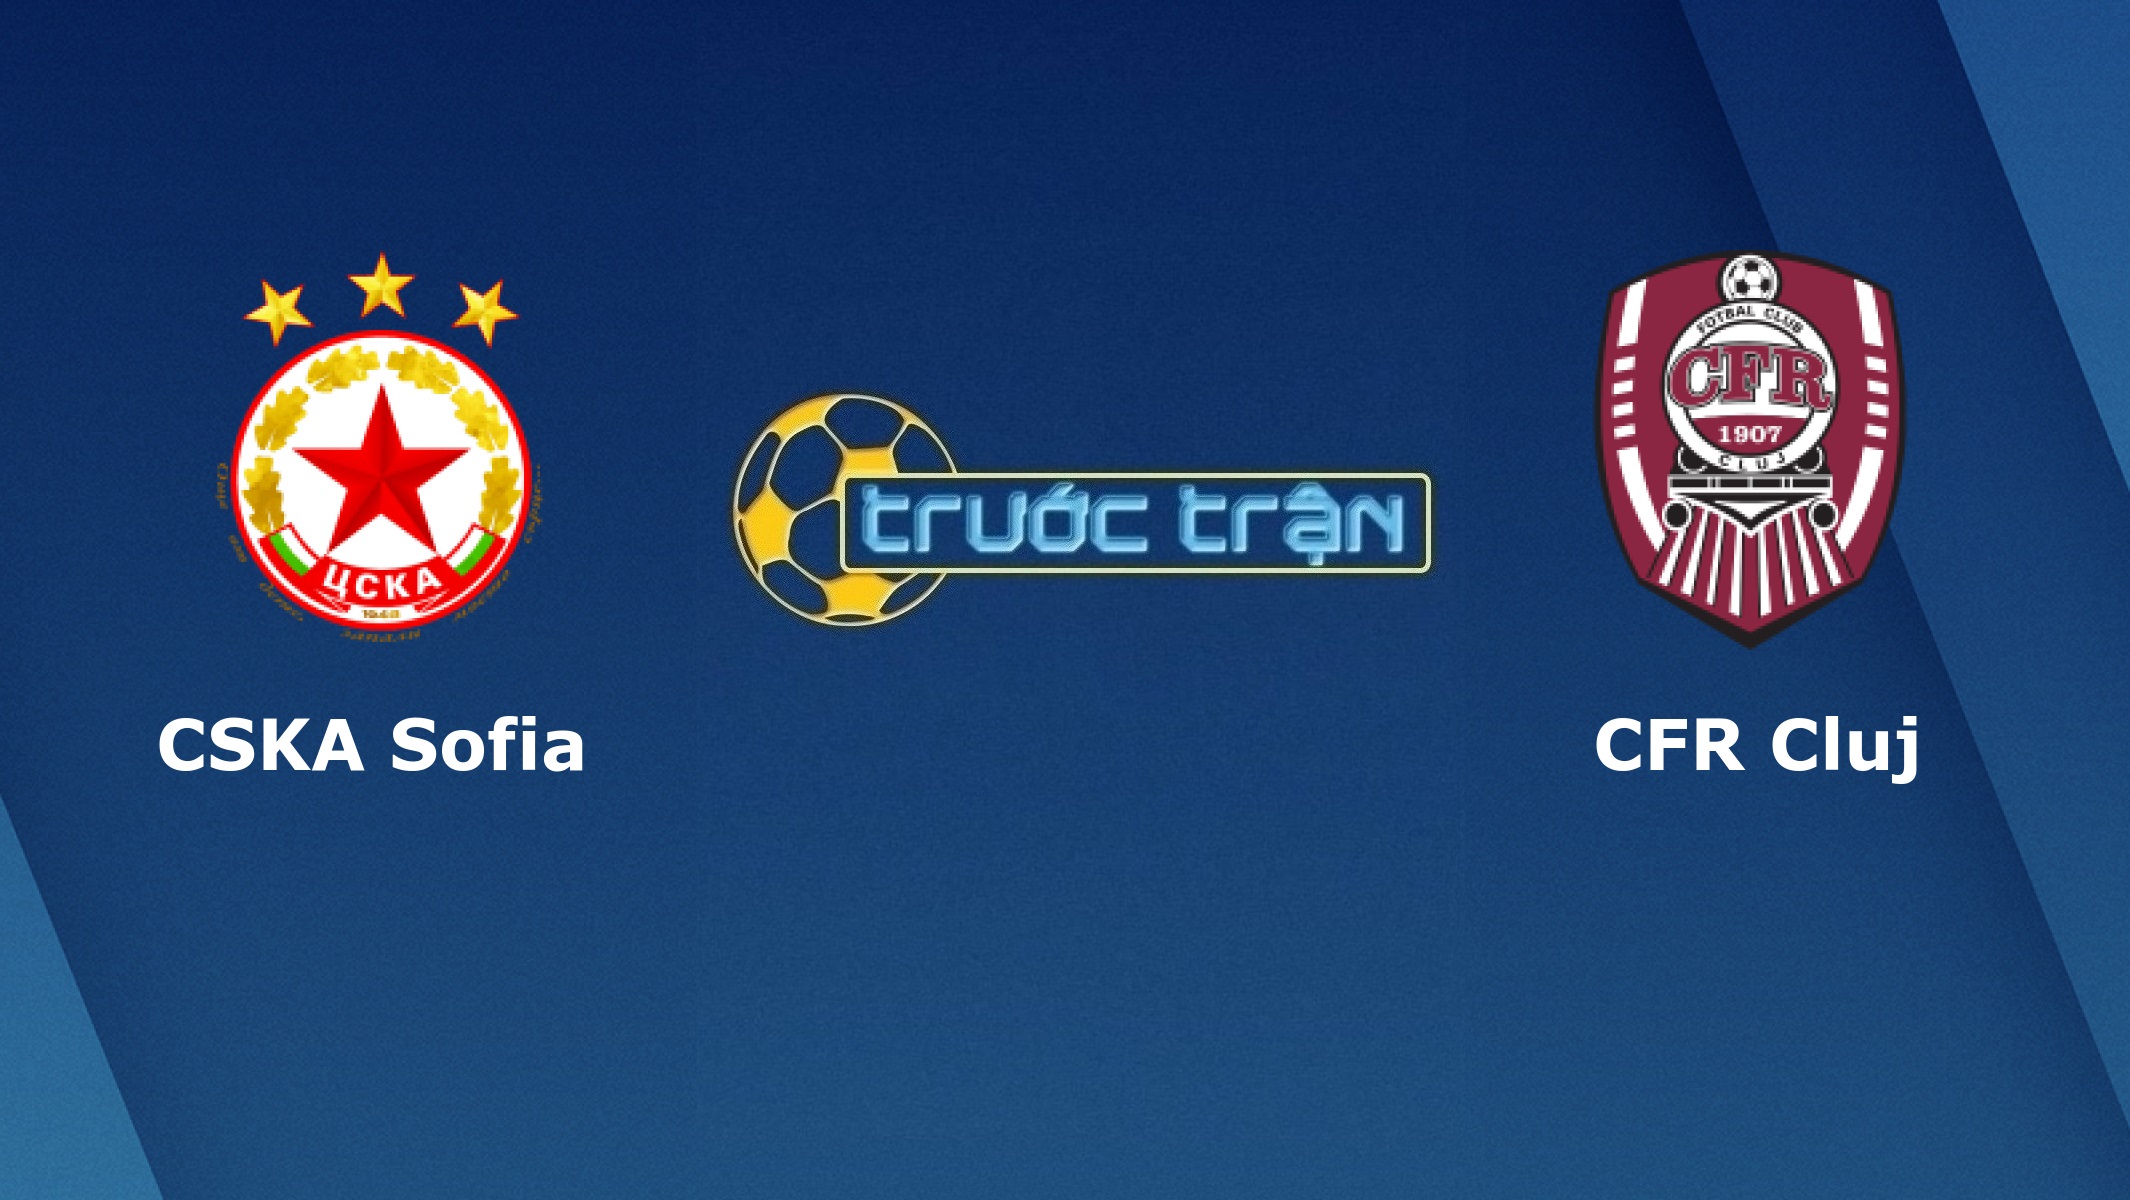 CSKA Sofia vs CFR Cluj – Tip kèo bóng đá hôm nay – 23h55 22/10/2020